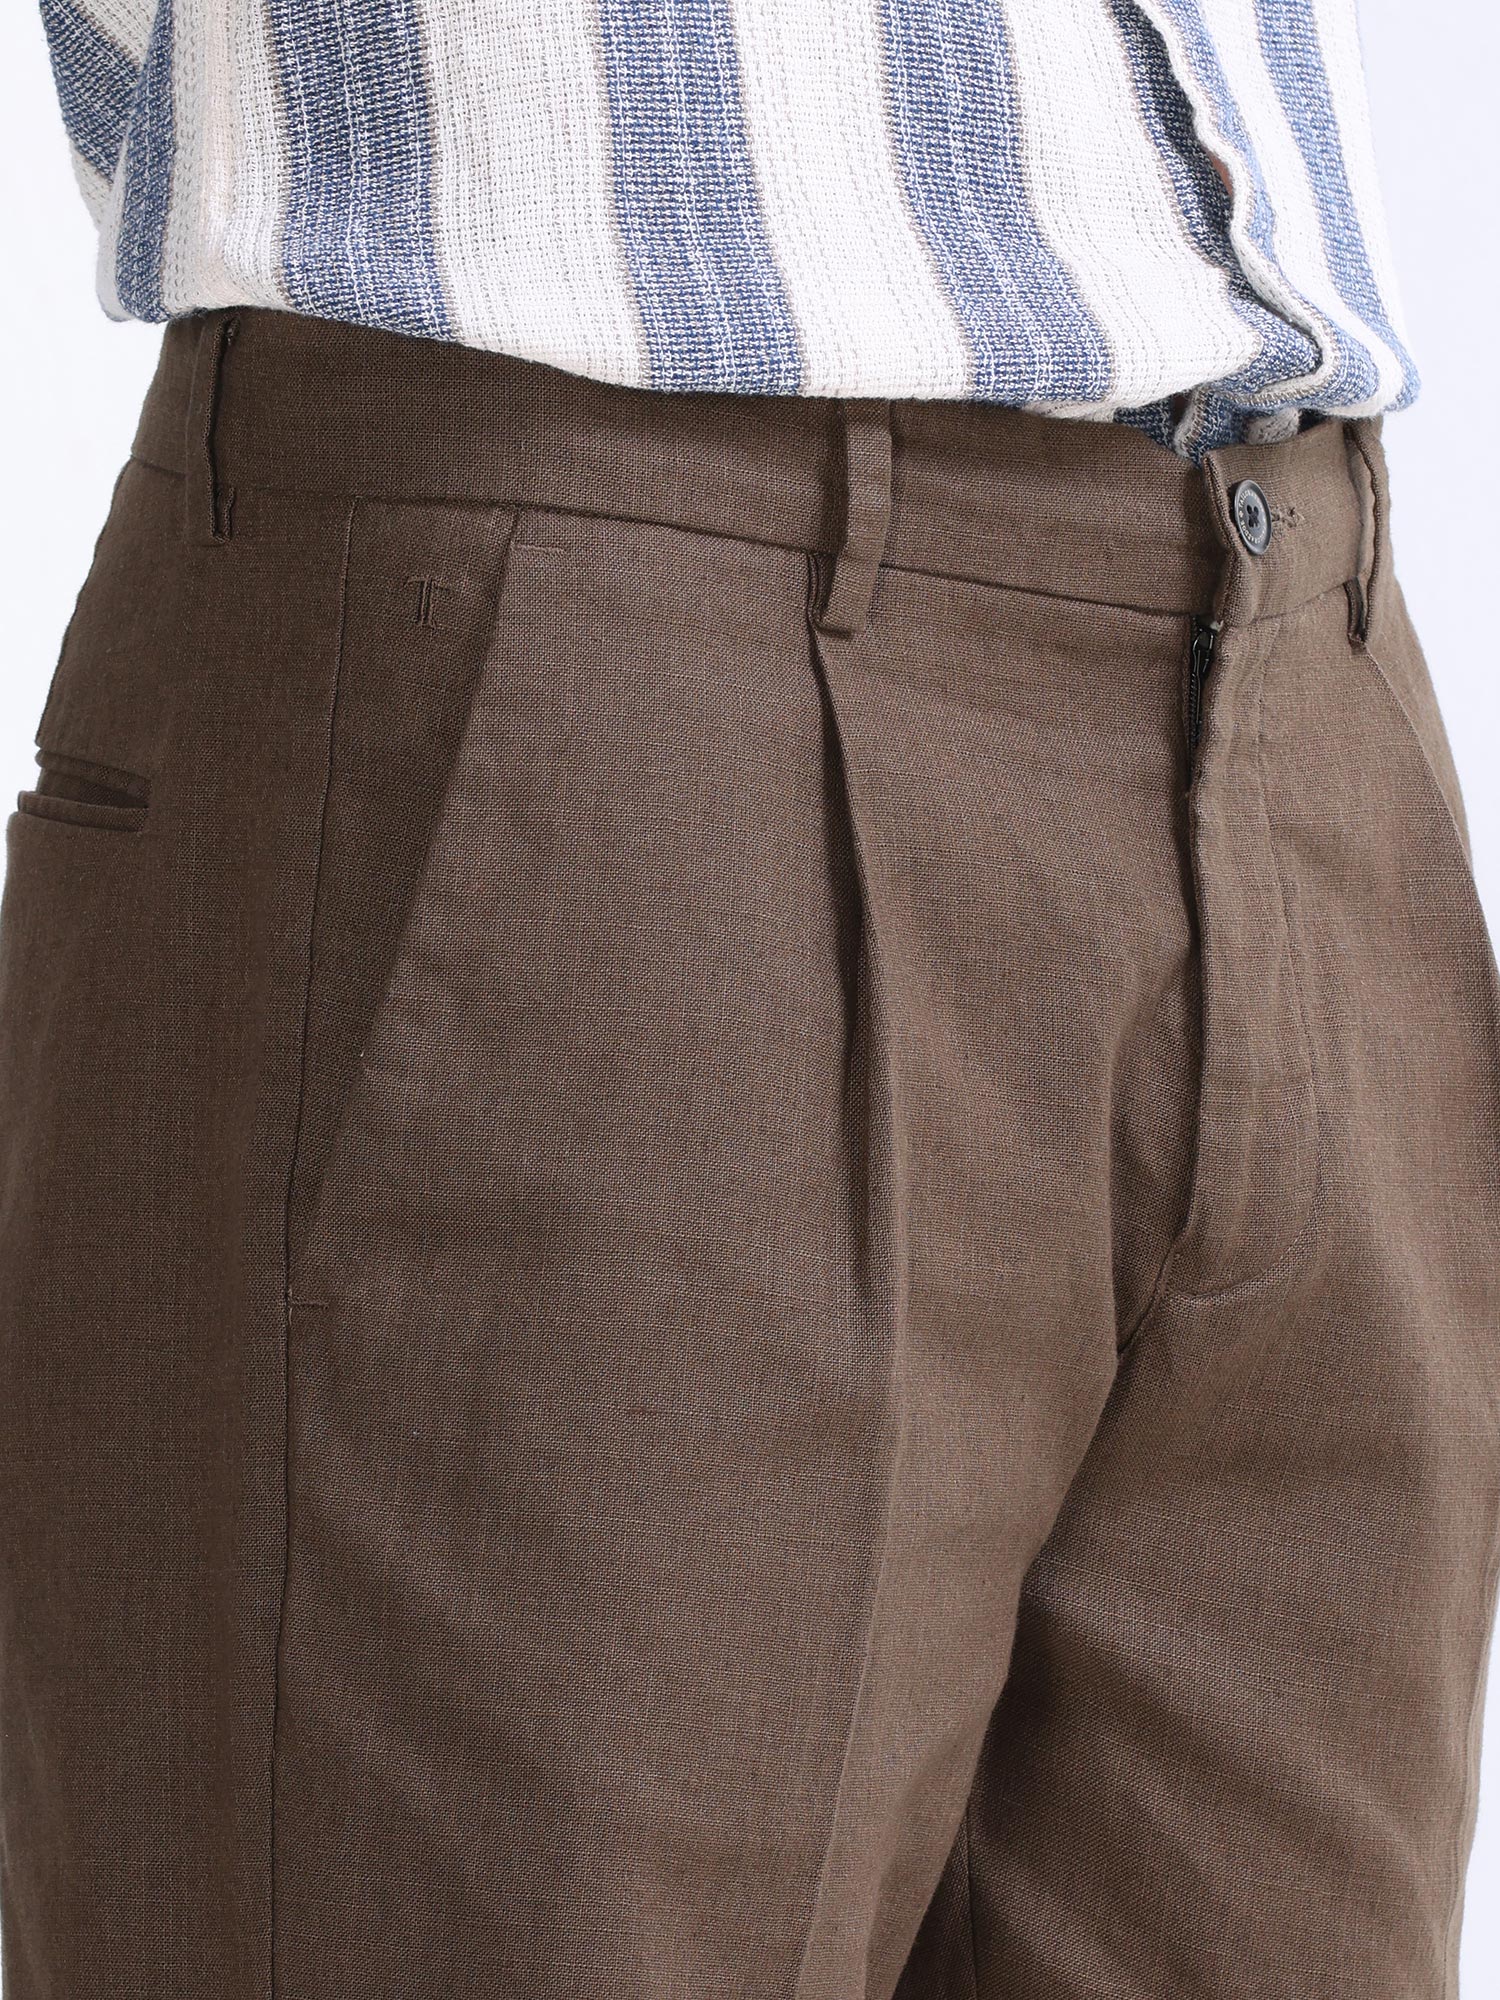 Buy Navy Camo Cargo Pants For Men Online In India